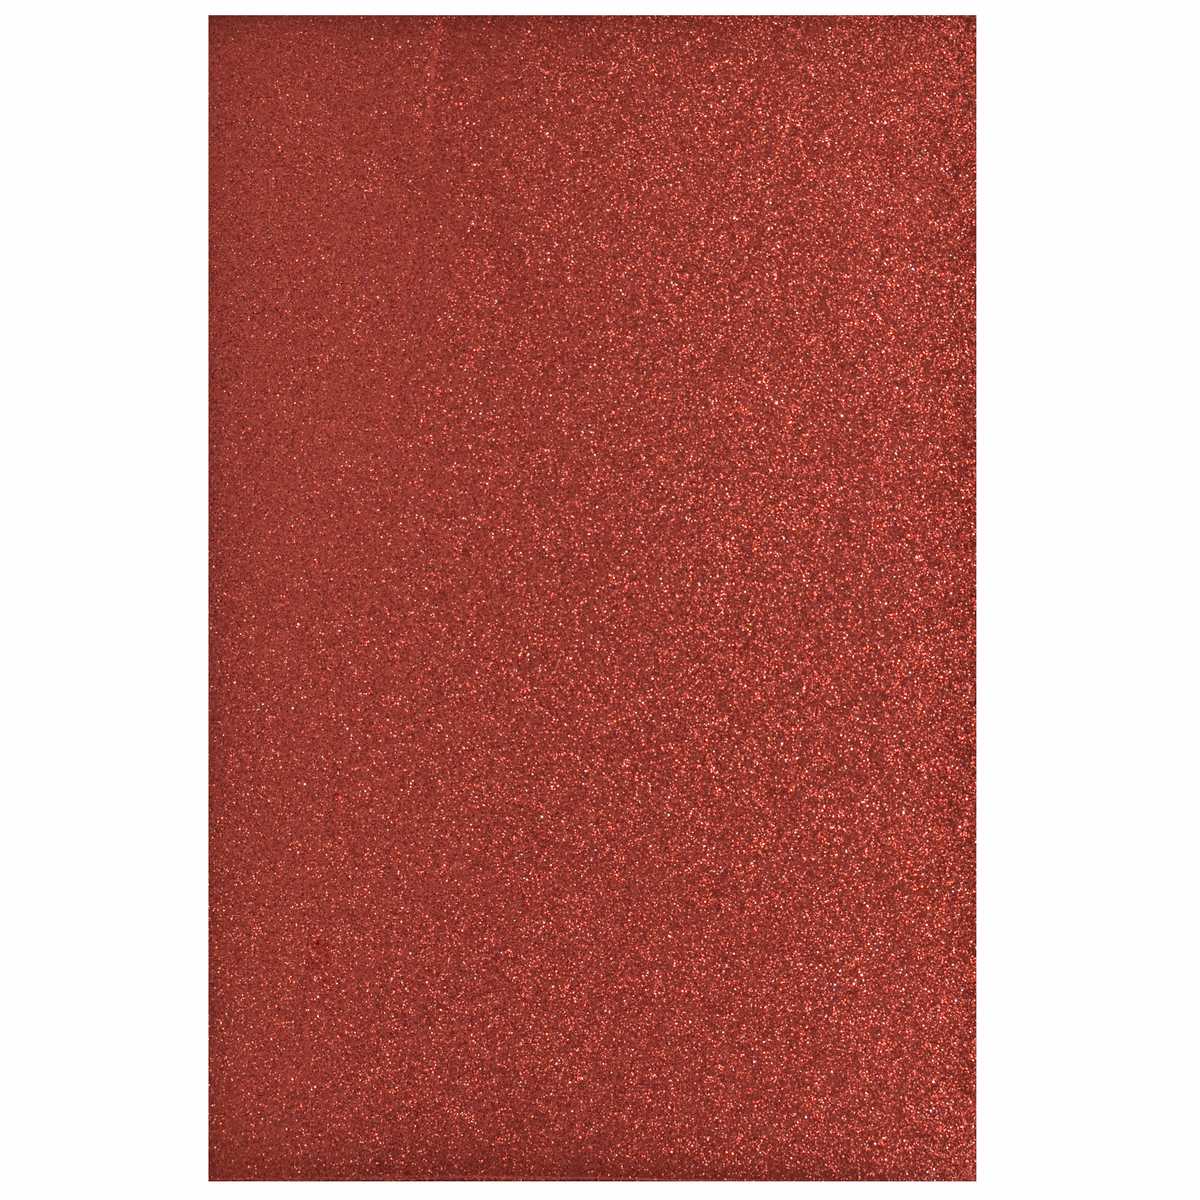 jags-mumbai Glitter Paper & Foam Sheet A4 Glitter Foam Sheet Without Sticker Red 00196RD